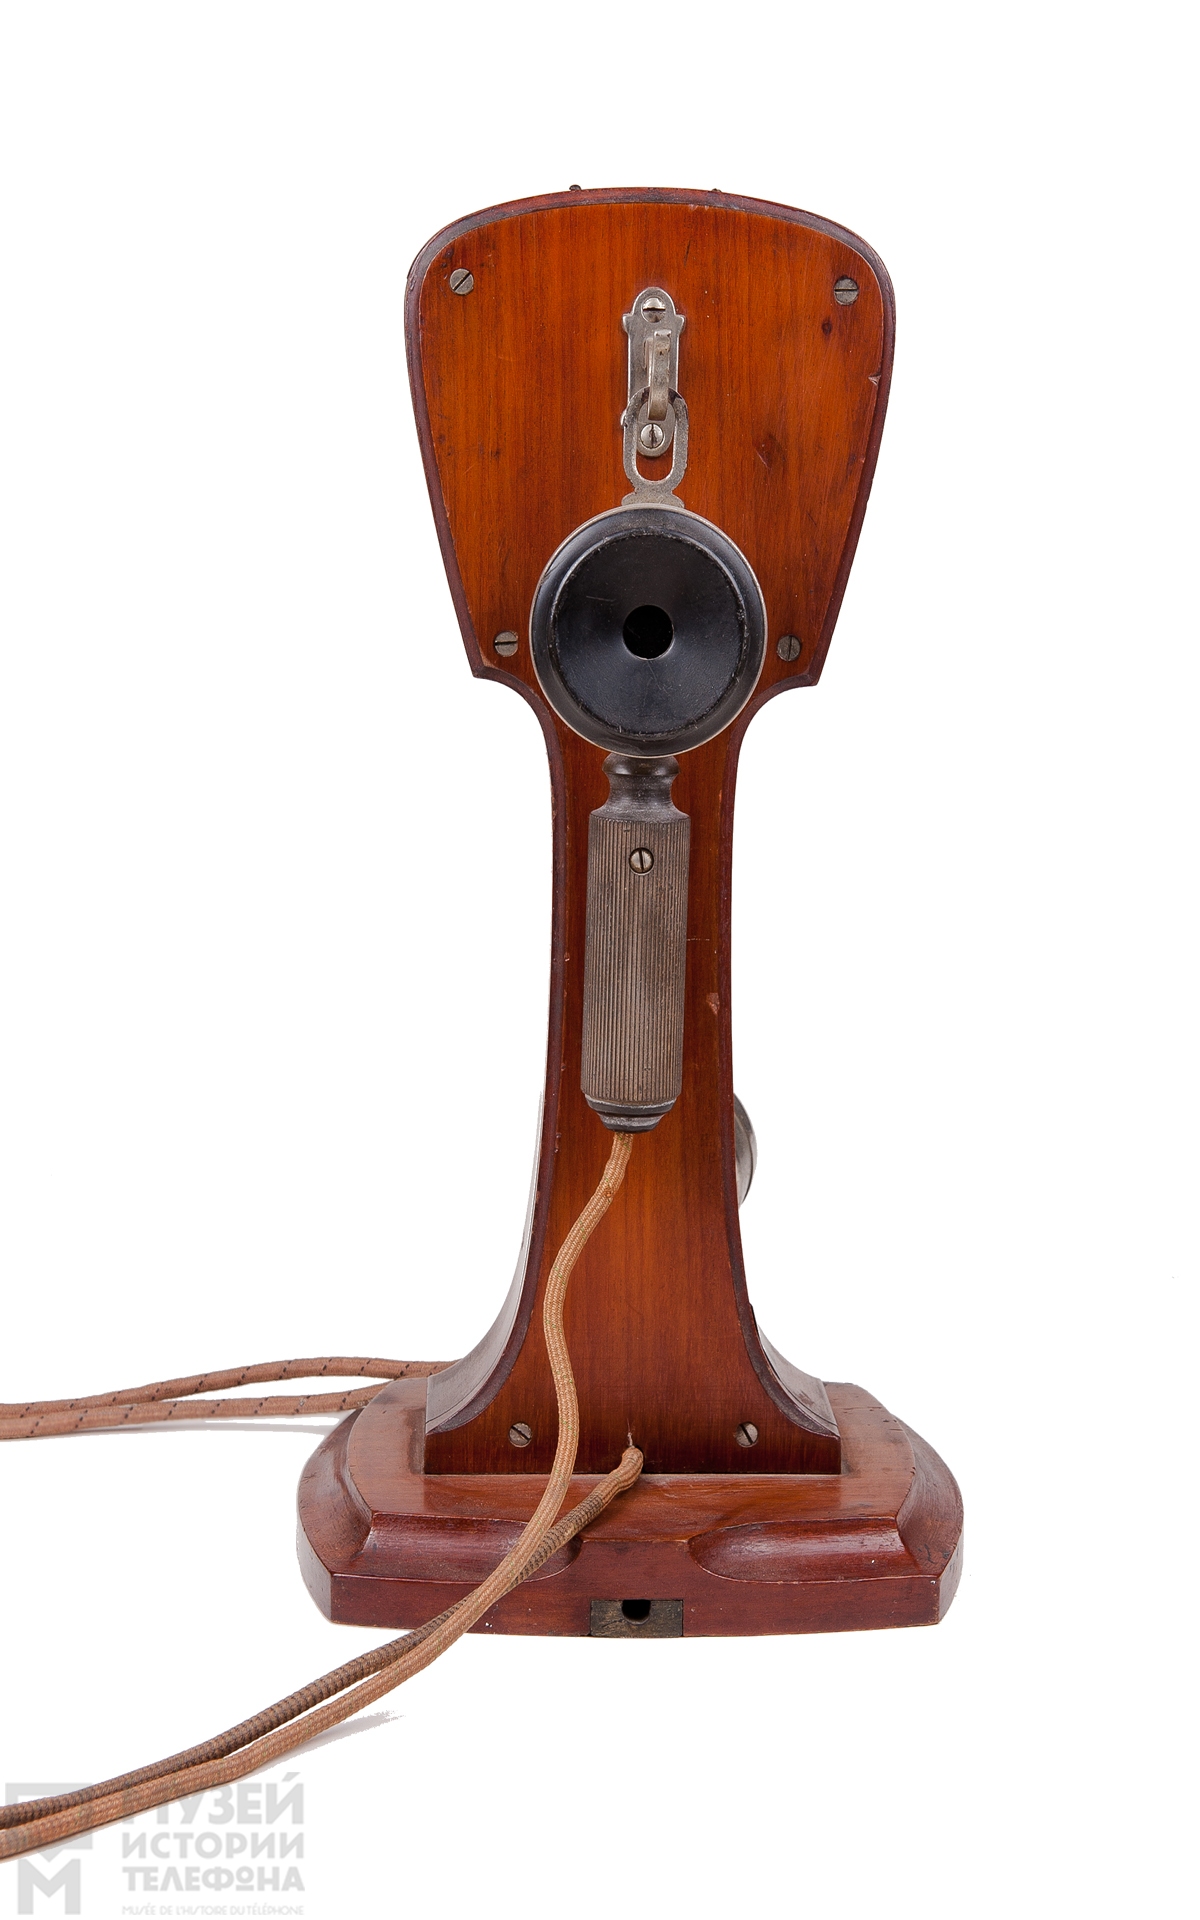 Телефонный аппарат в корпусе из красного дерева с микротелефонной трубкой и дополнительным наушником